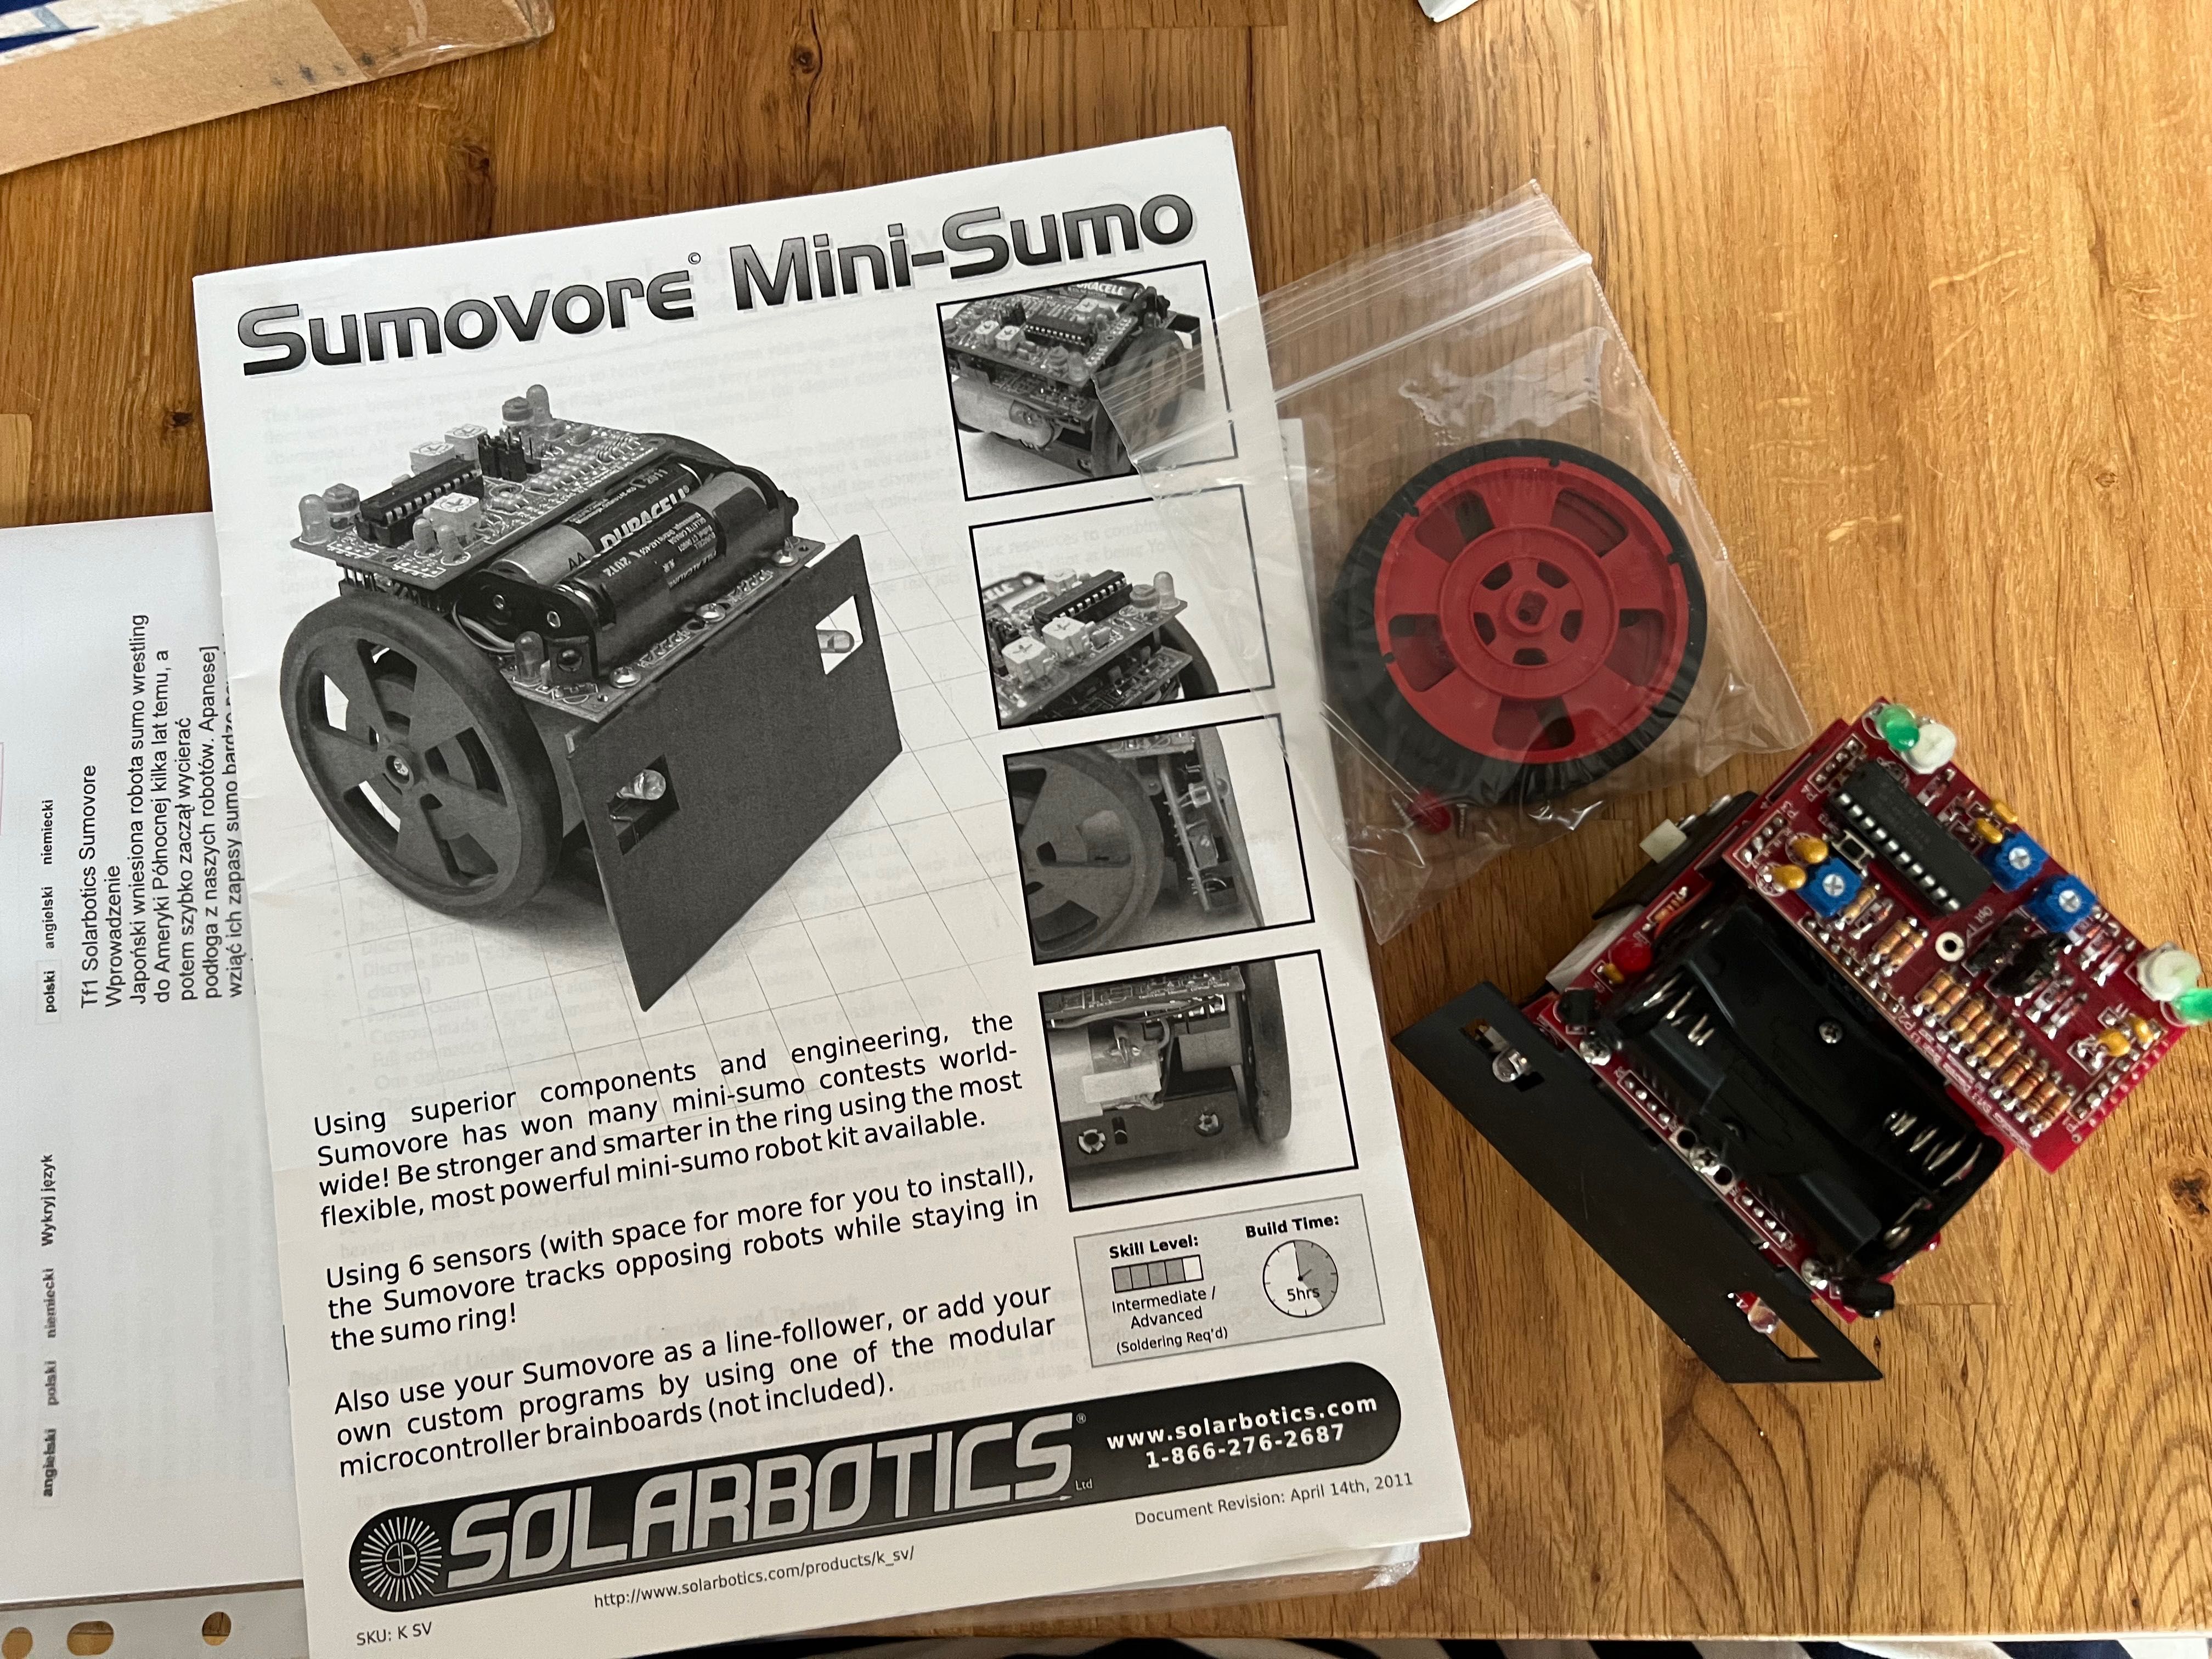 Solarbotics Sumovore Mini-Sumo